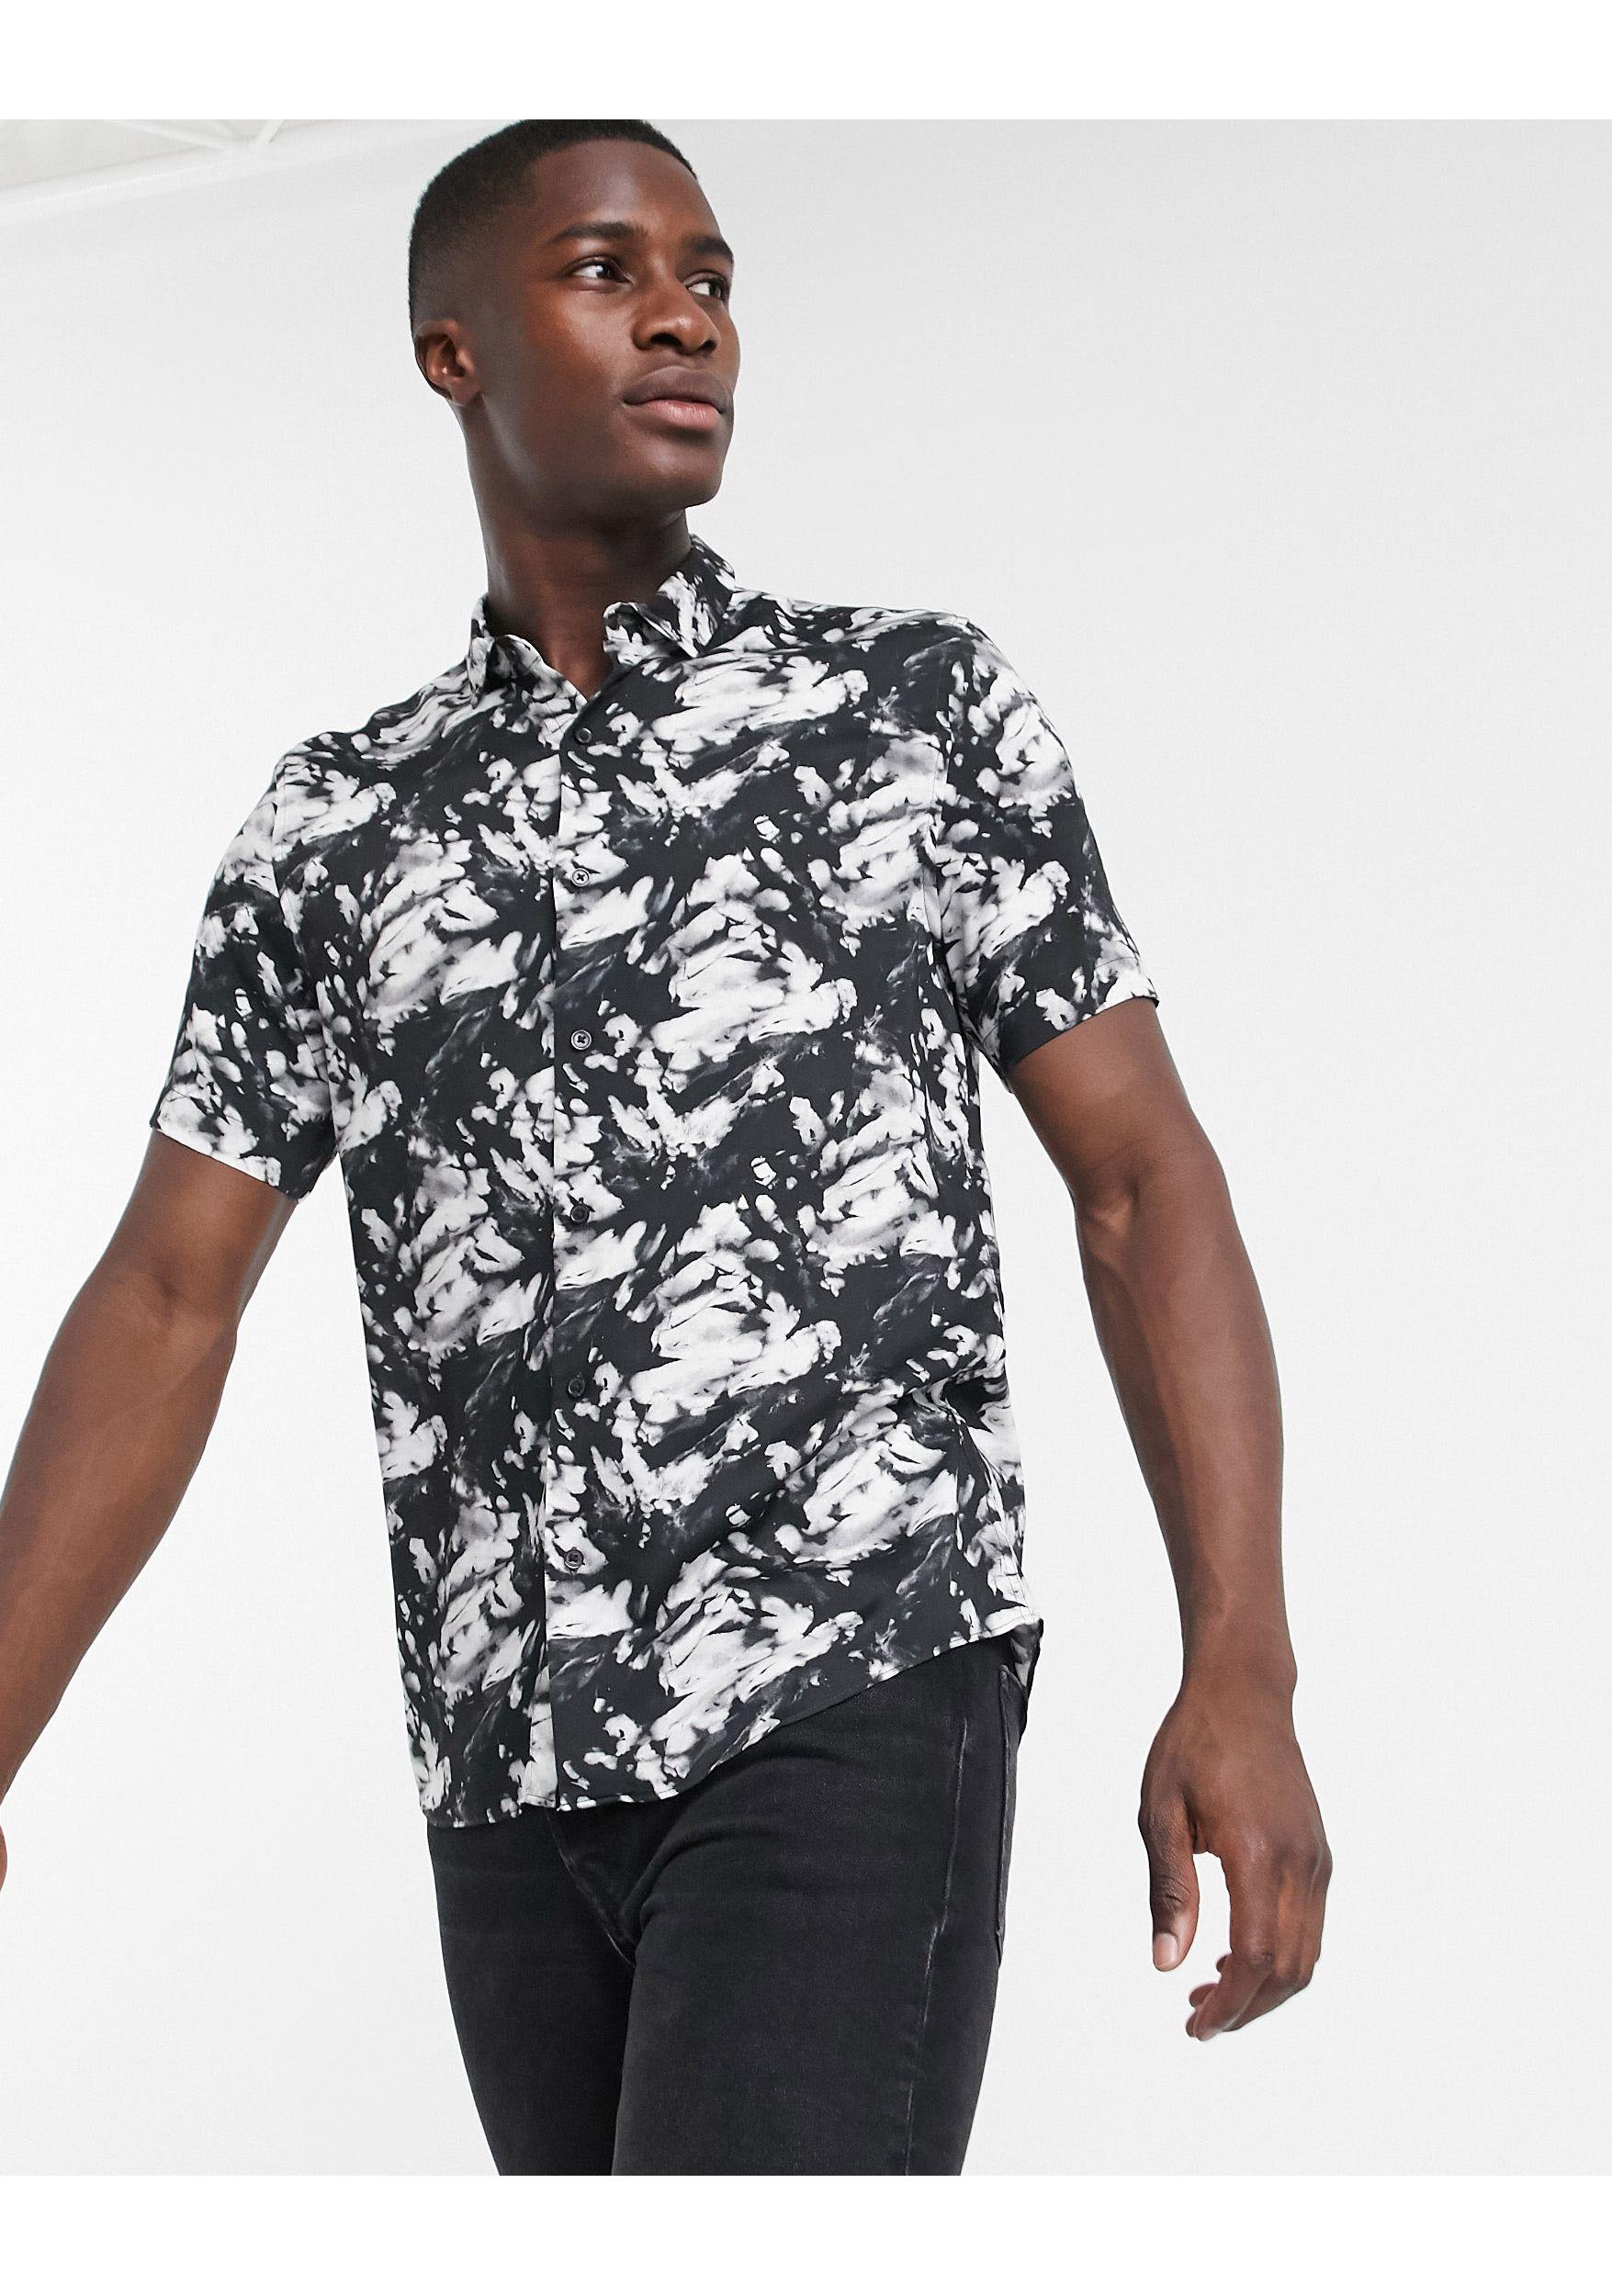 TOPMAN Short-sleeved Tie-dye Print Shirt in Black for Men - Lyst